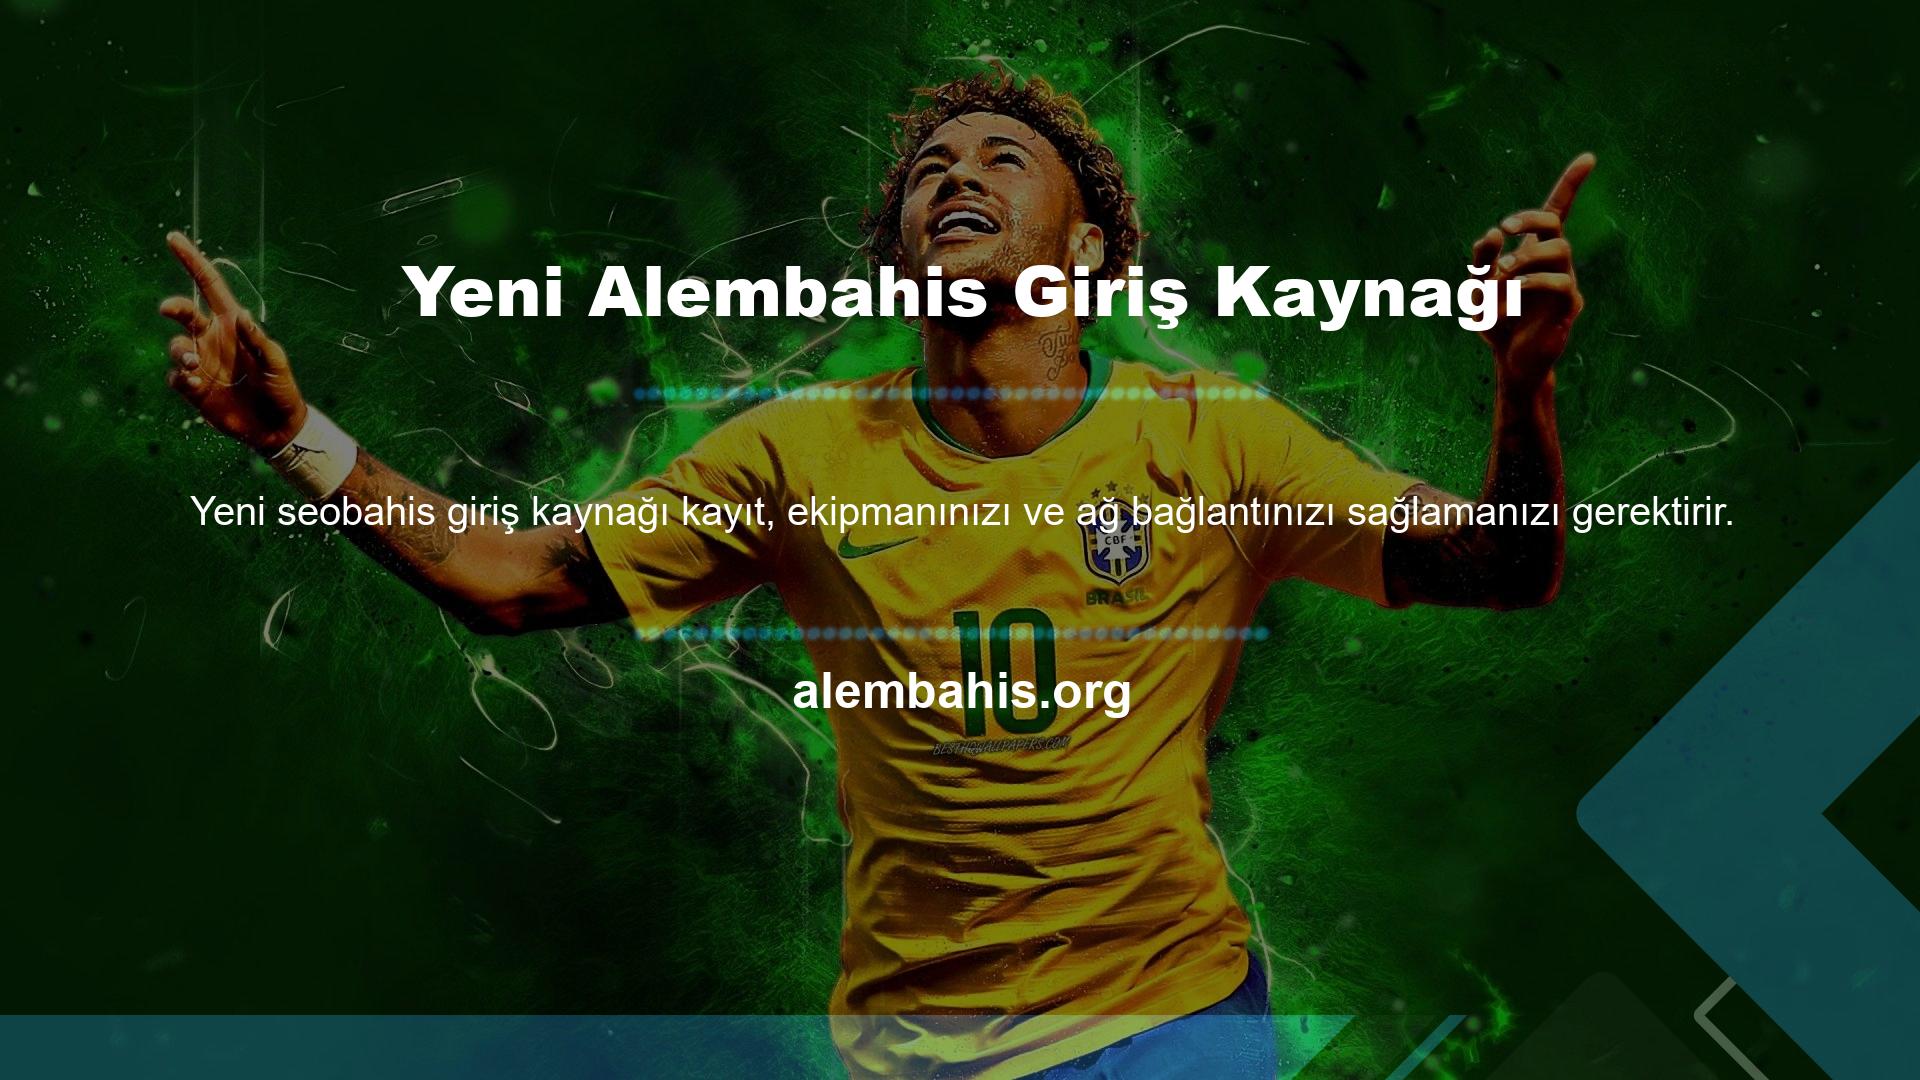 Alembahis bu web sitesindeki canlı maç ekipmanlarıyla ilgili herhangi bir güvenlik ihlali veya erişim sorunu nedeniyle herhangi bir suçlama yoktur